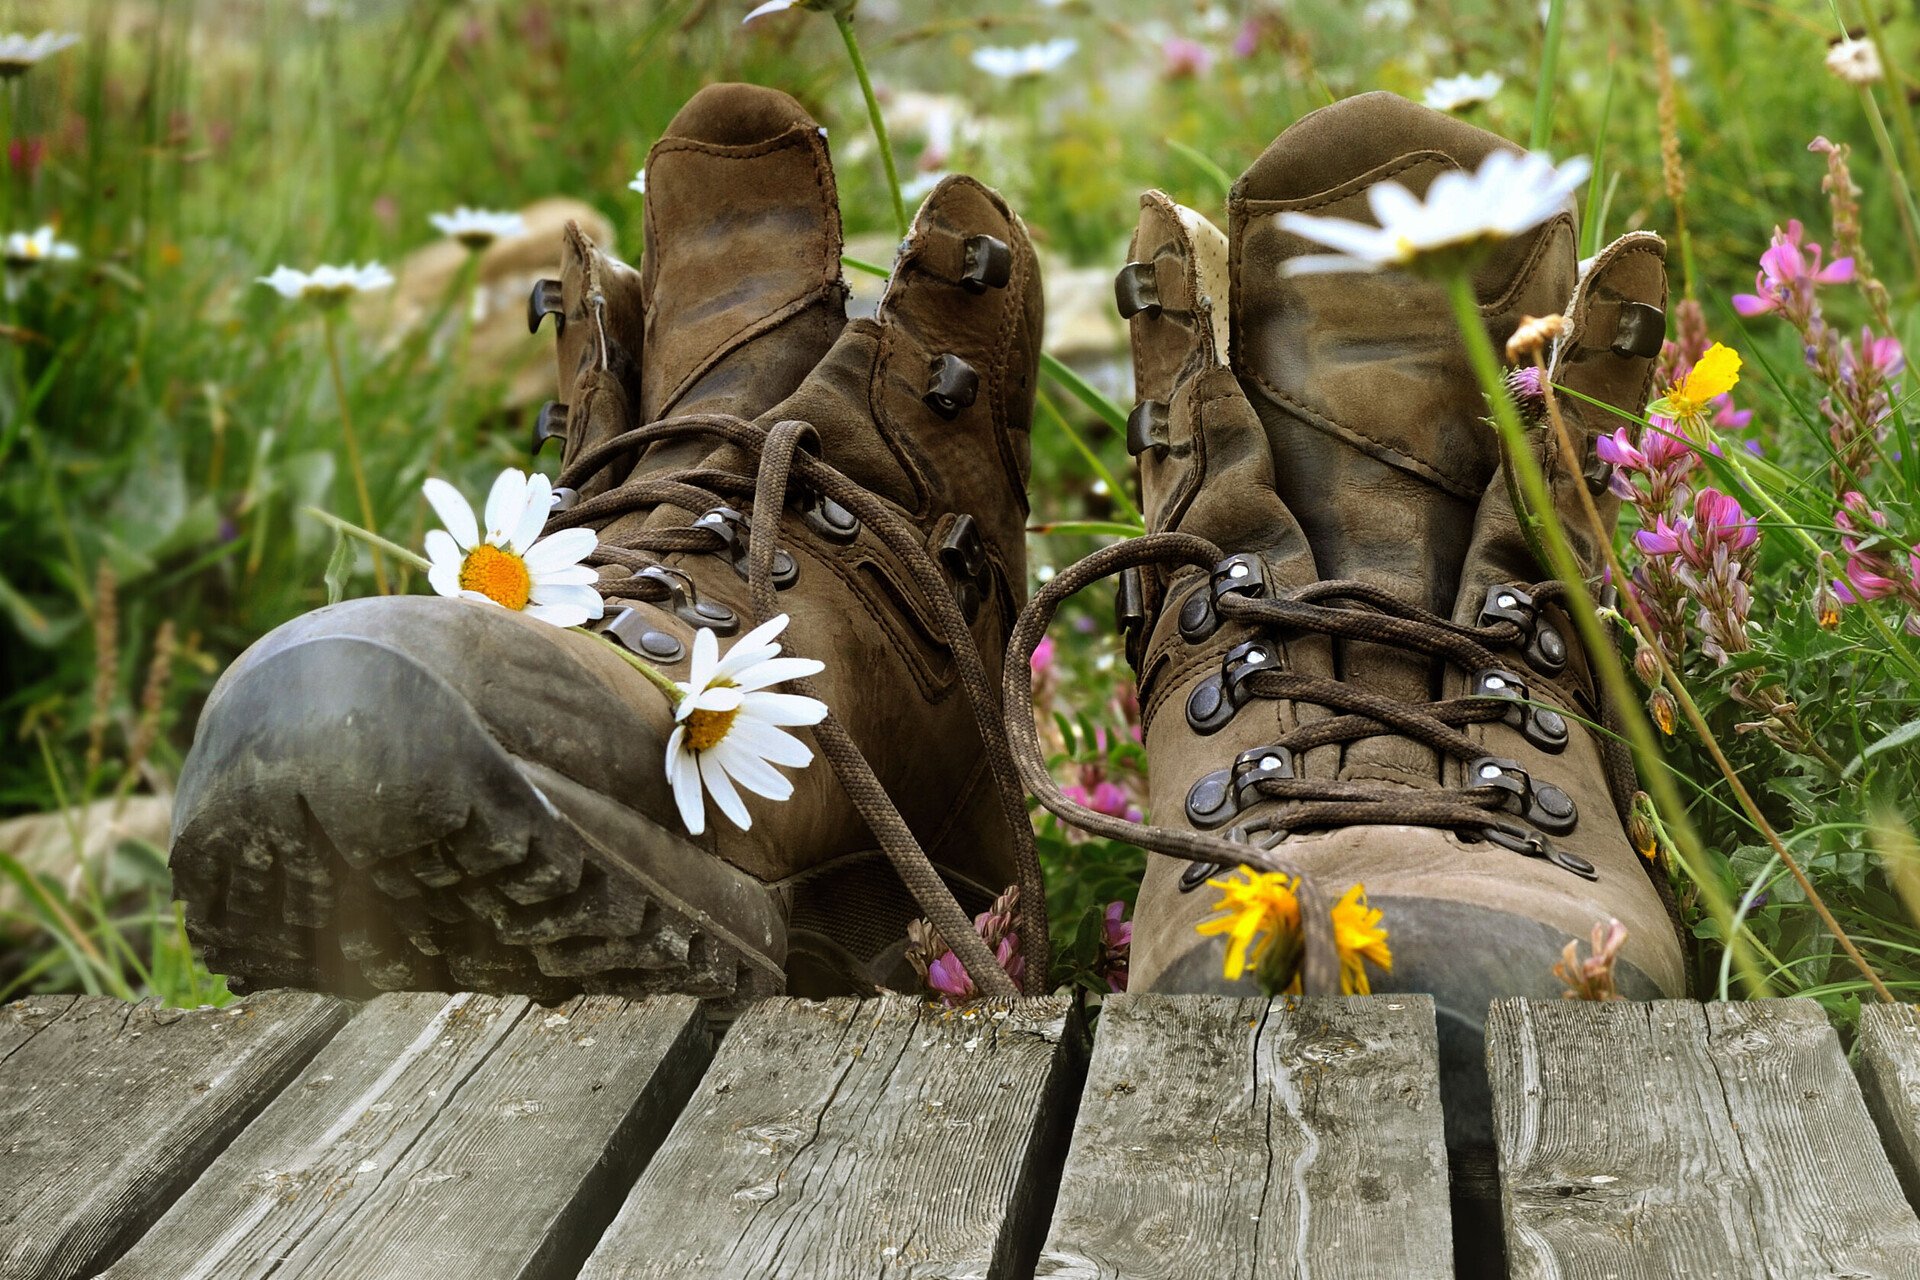 Schuhe trocknen lassen wie hier im Gras ist ein gutes Mittel gegen Schweißfüße.